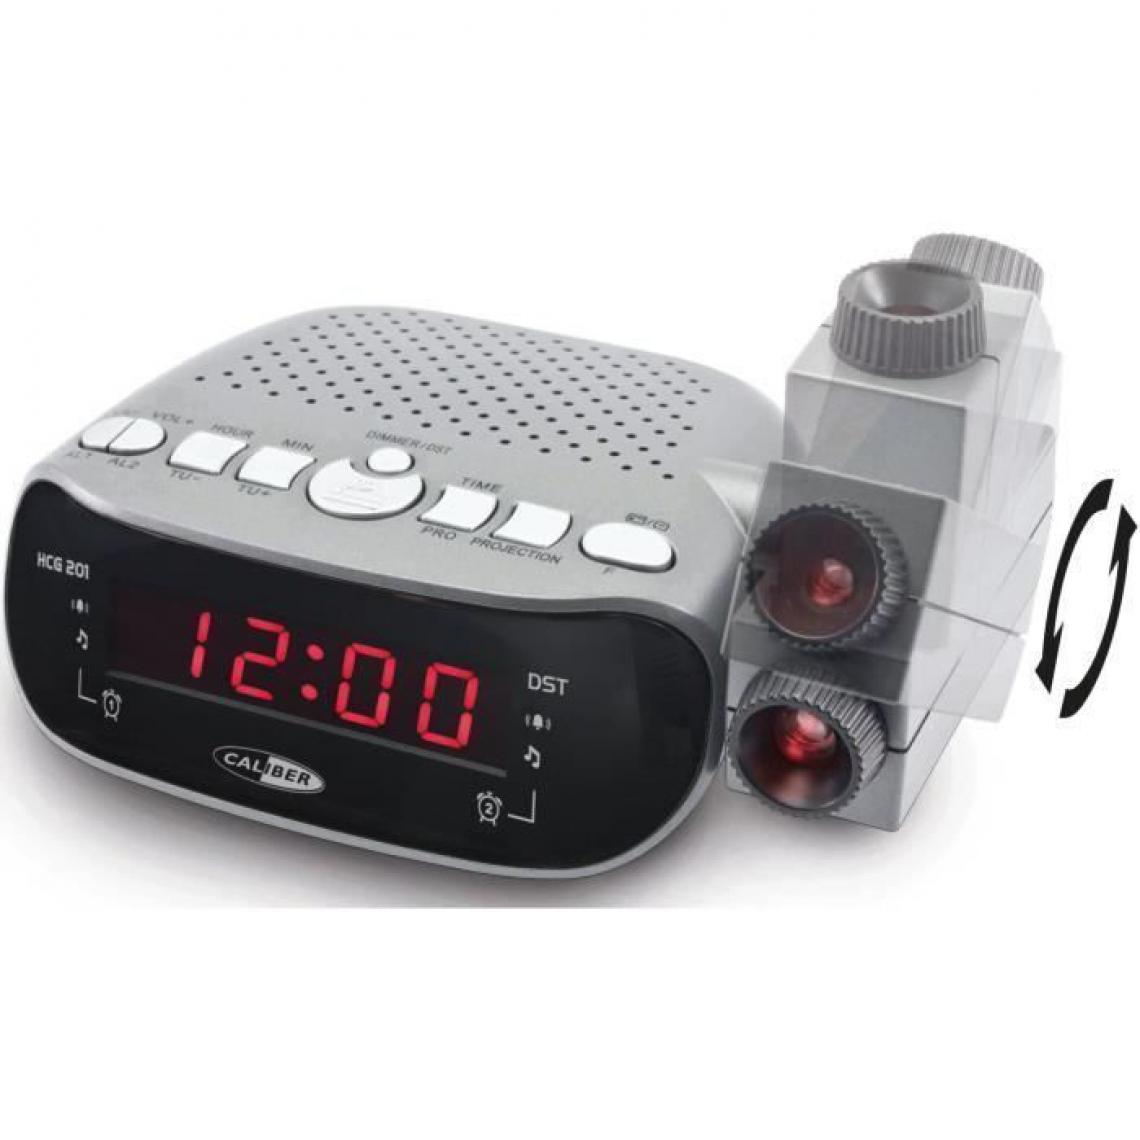 Caliber - CALIBER HCG201 Radio reveil FM projecteur double alarme - Gris - Pack Enceintes Home Cinéma